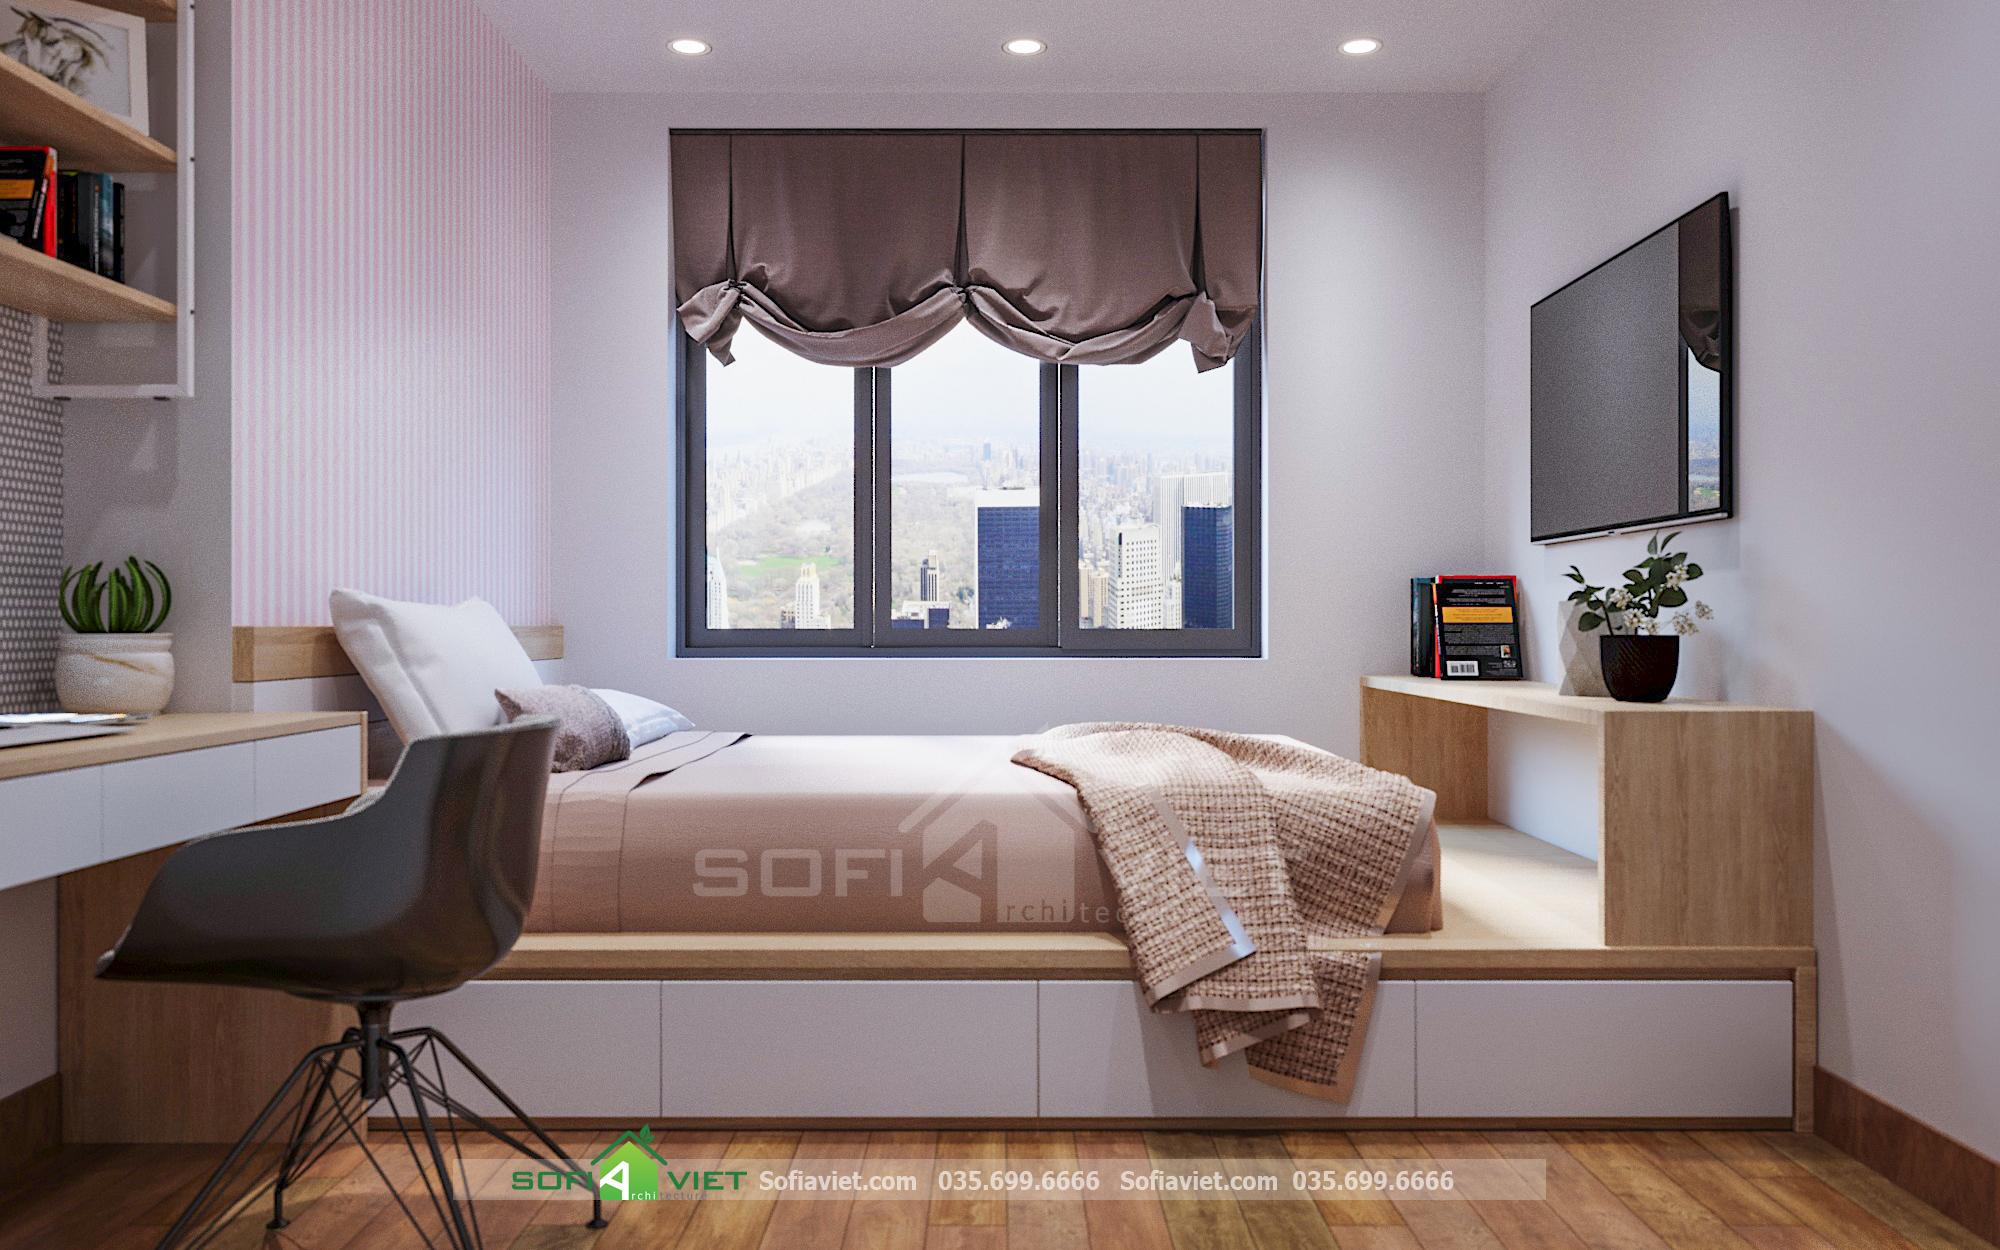 Mẹo decor phòng ngủ đơn giản, tiết kiệm diện tích phòng